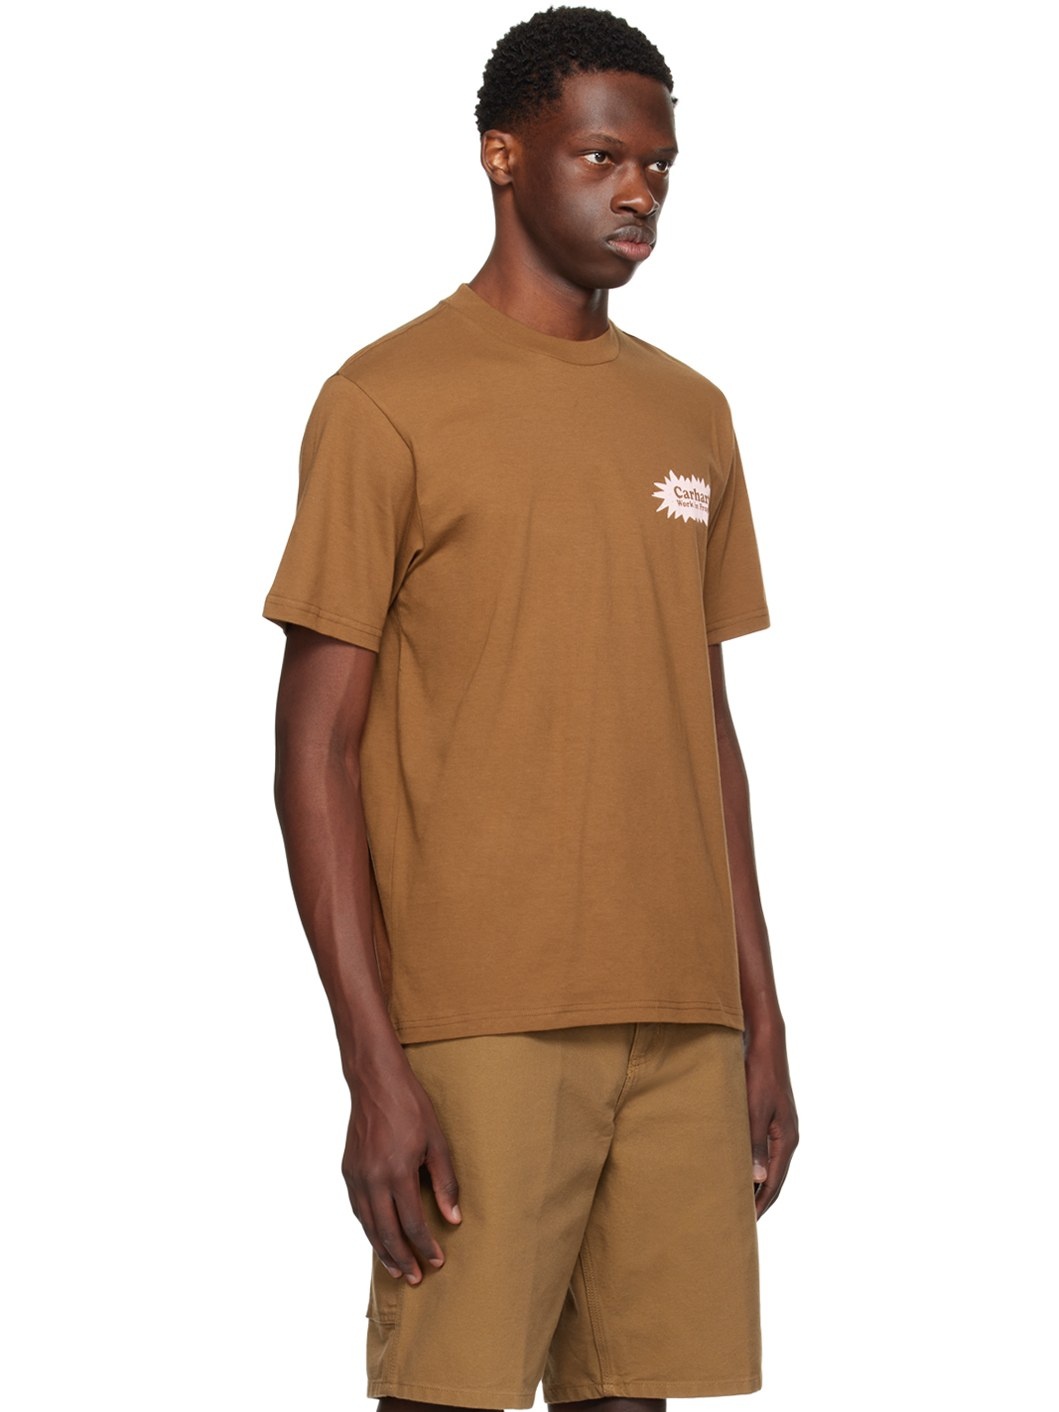 Brown Bam T-Shirt - 2